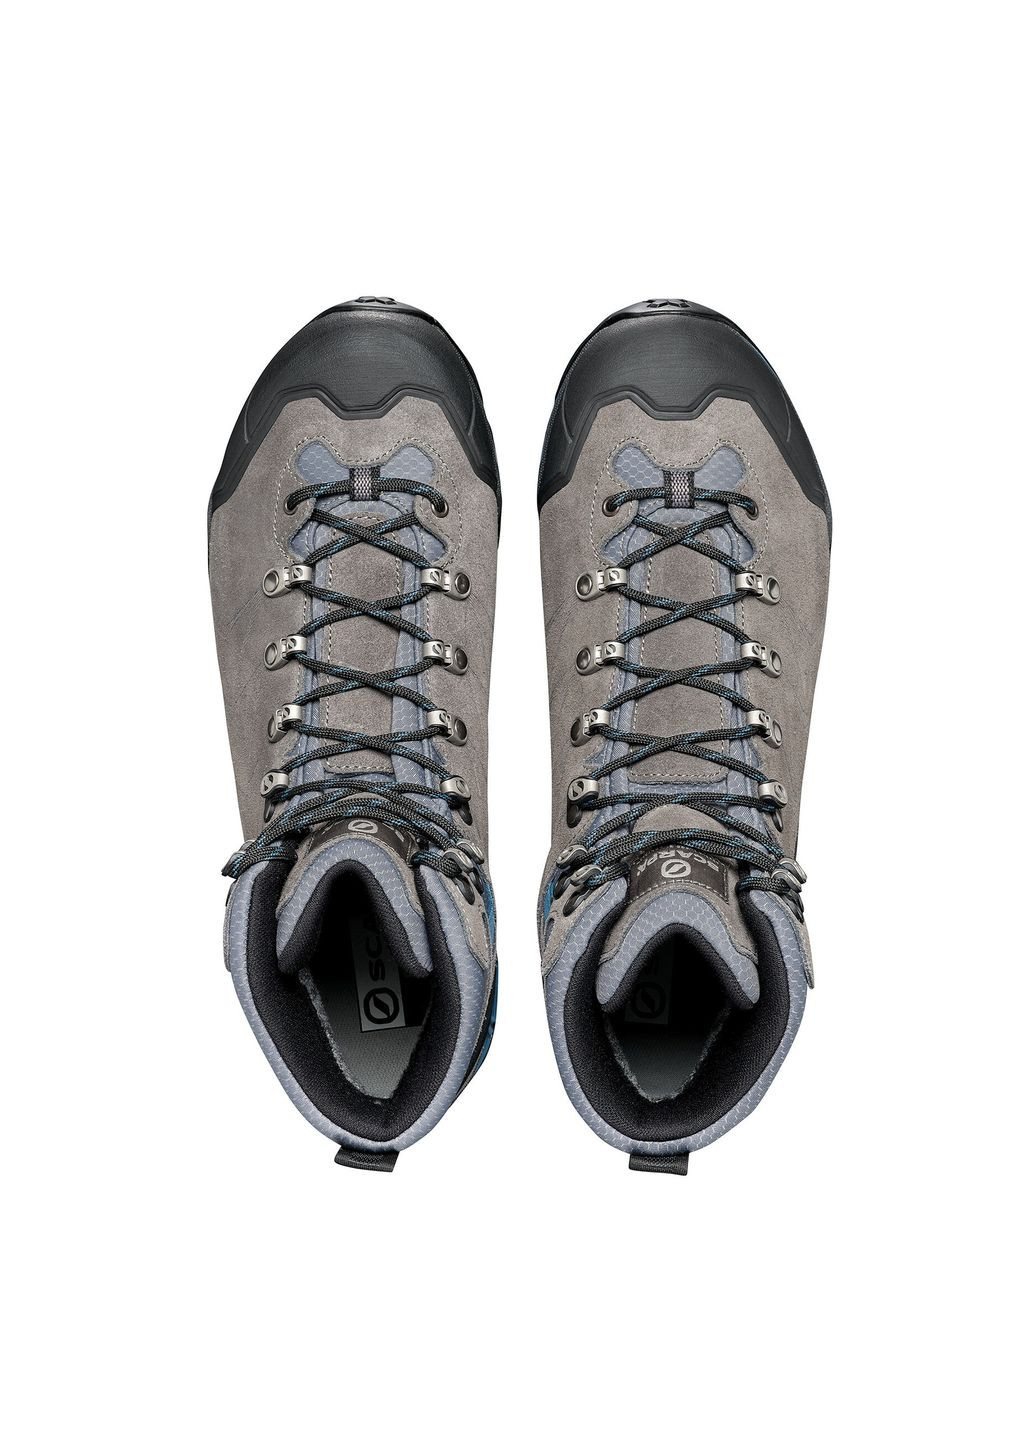 Цветные осенние ботинки мужские zg trek gtx wide серый-голубой Scarpa